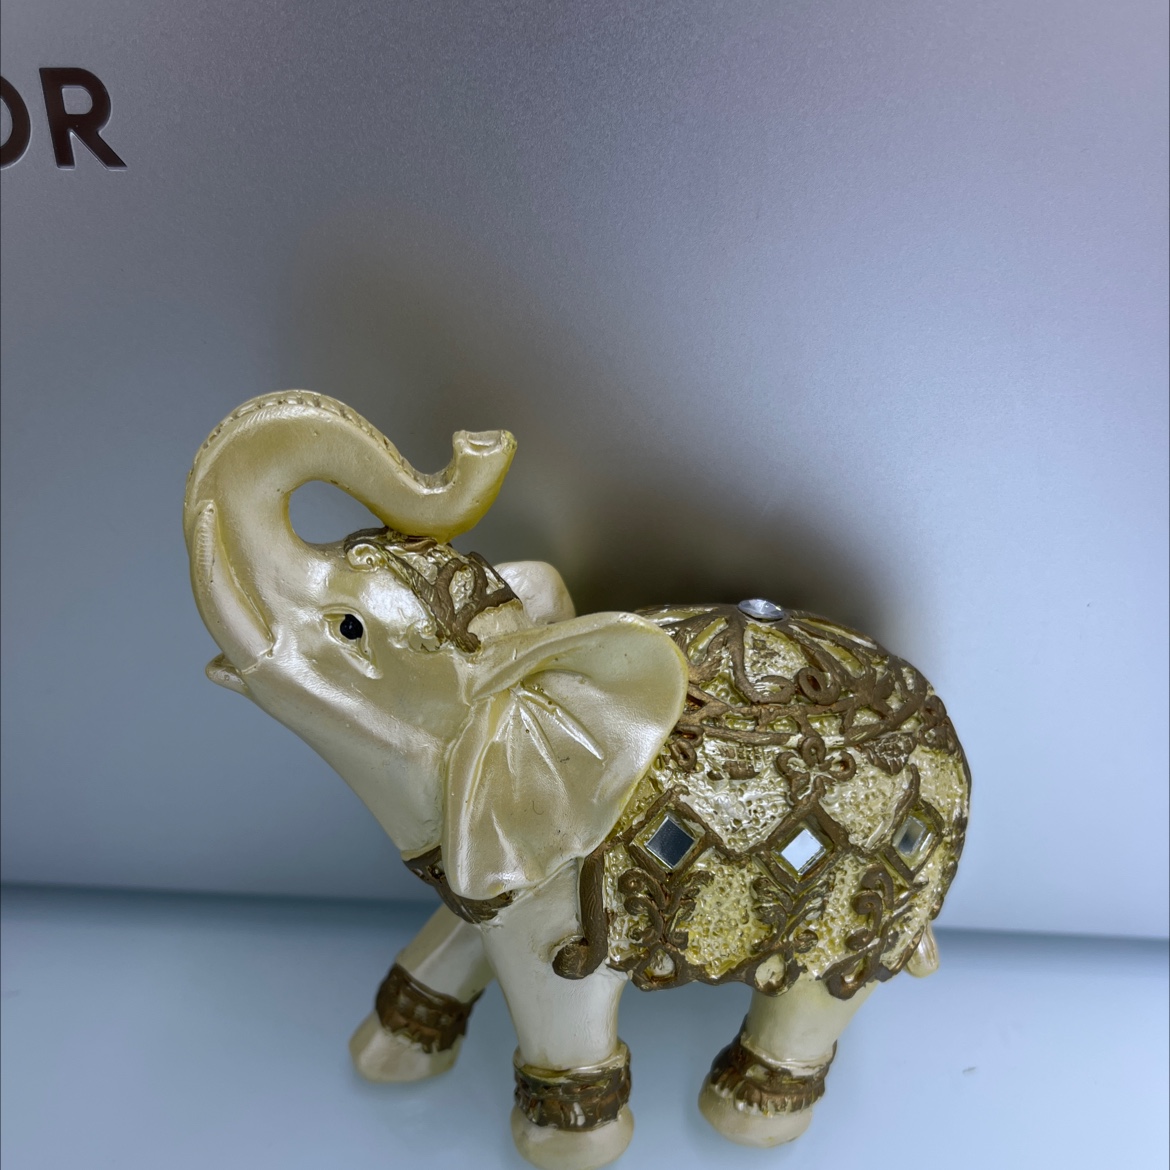 萌粒创意树脂工艺品摆件 大象装饰品 儿童玩具可爱卡通形象 安全无毒环保材质